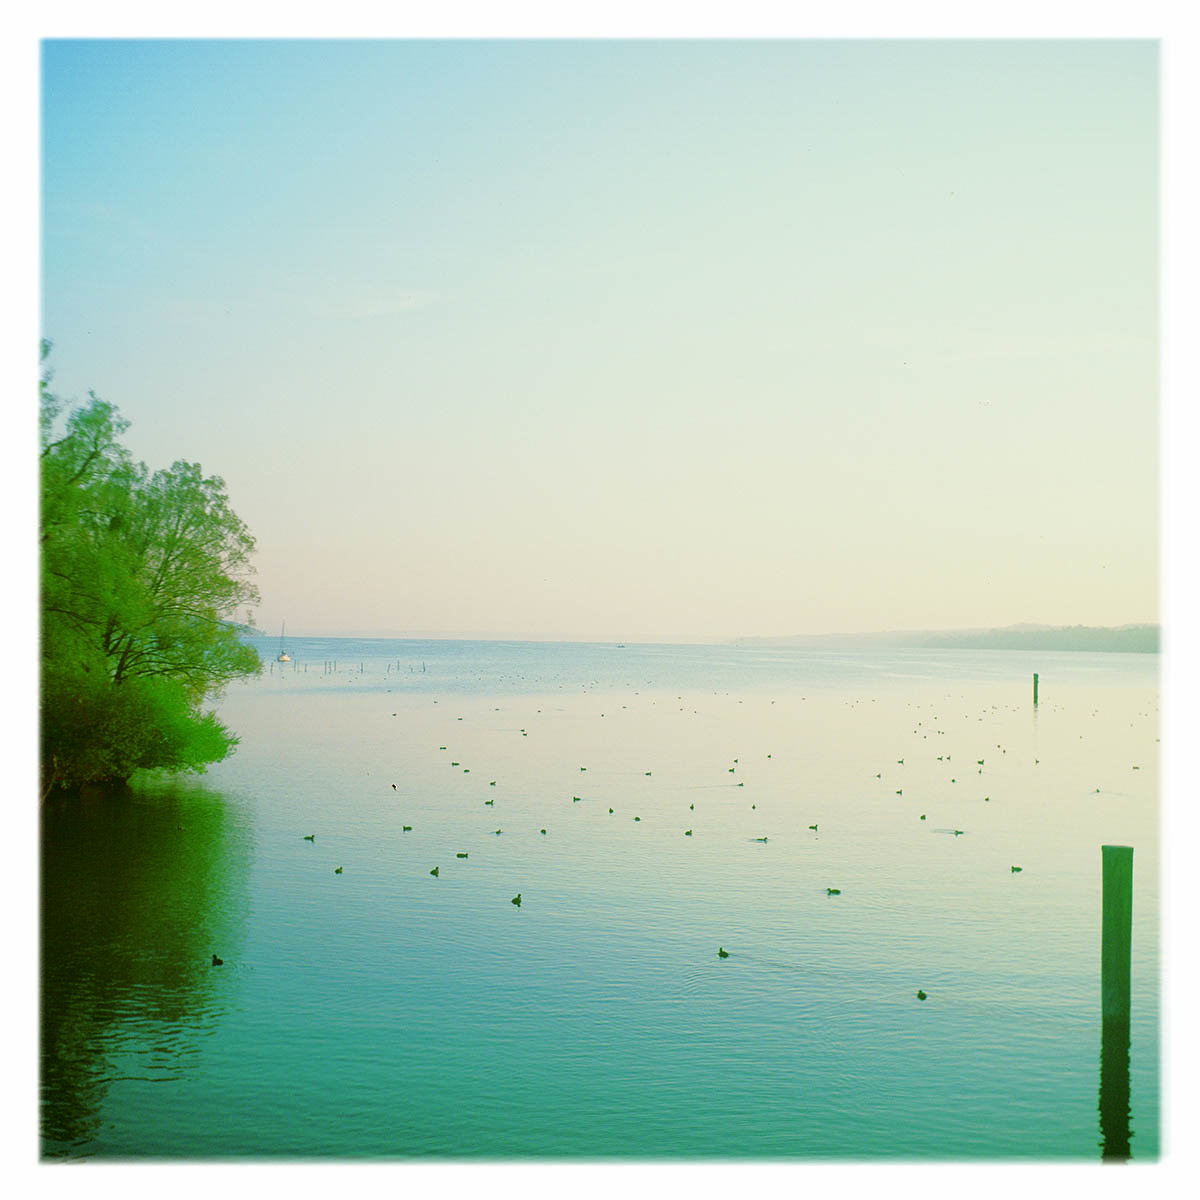 Am Starnberger See, Percha